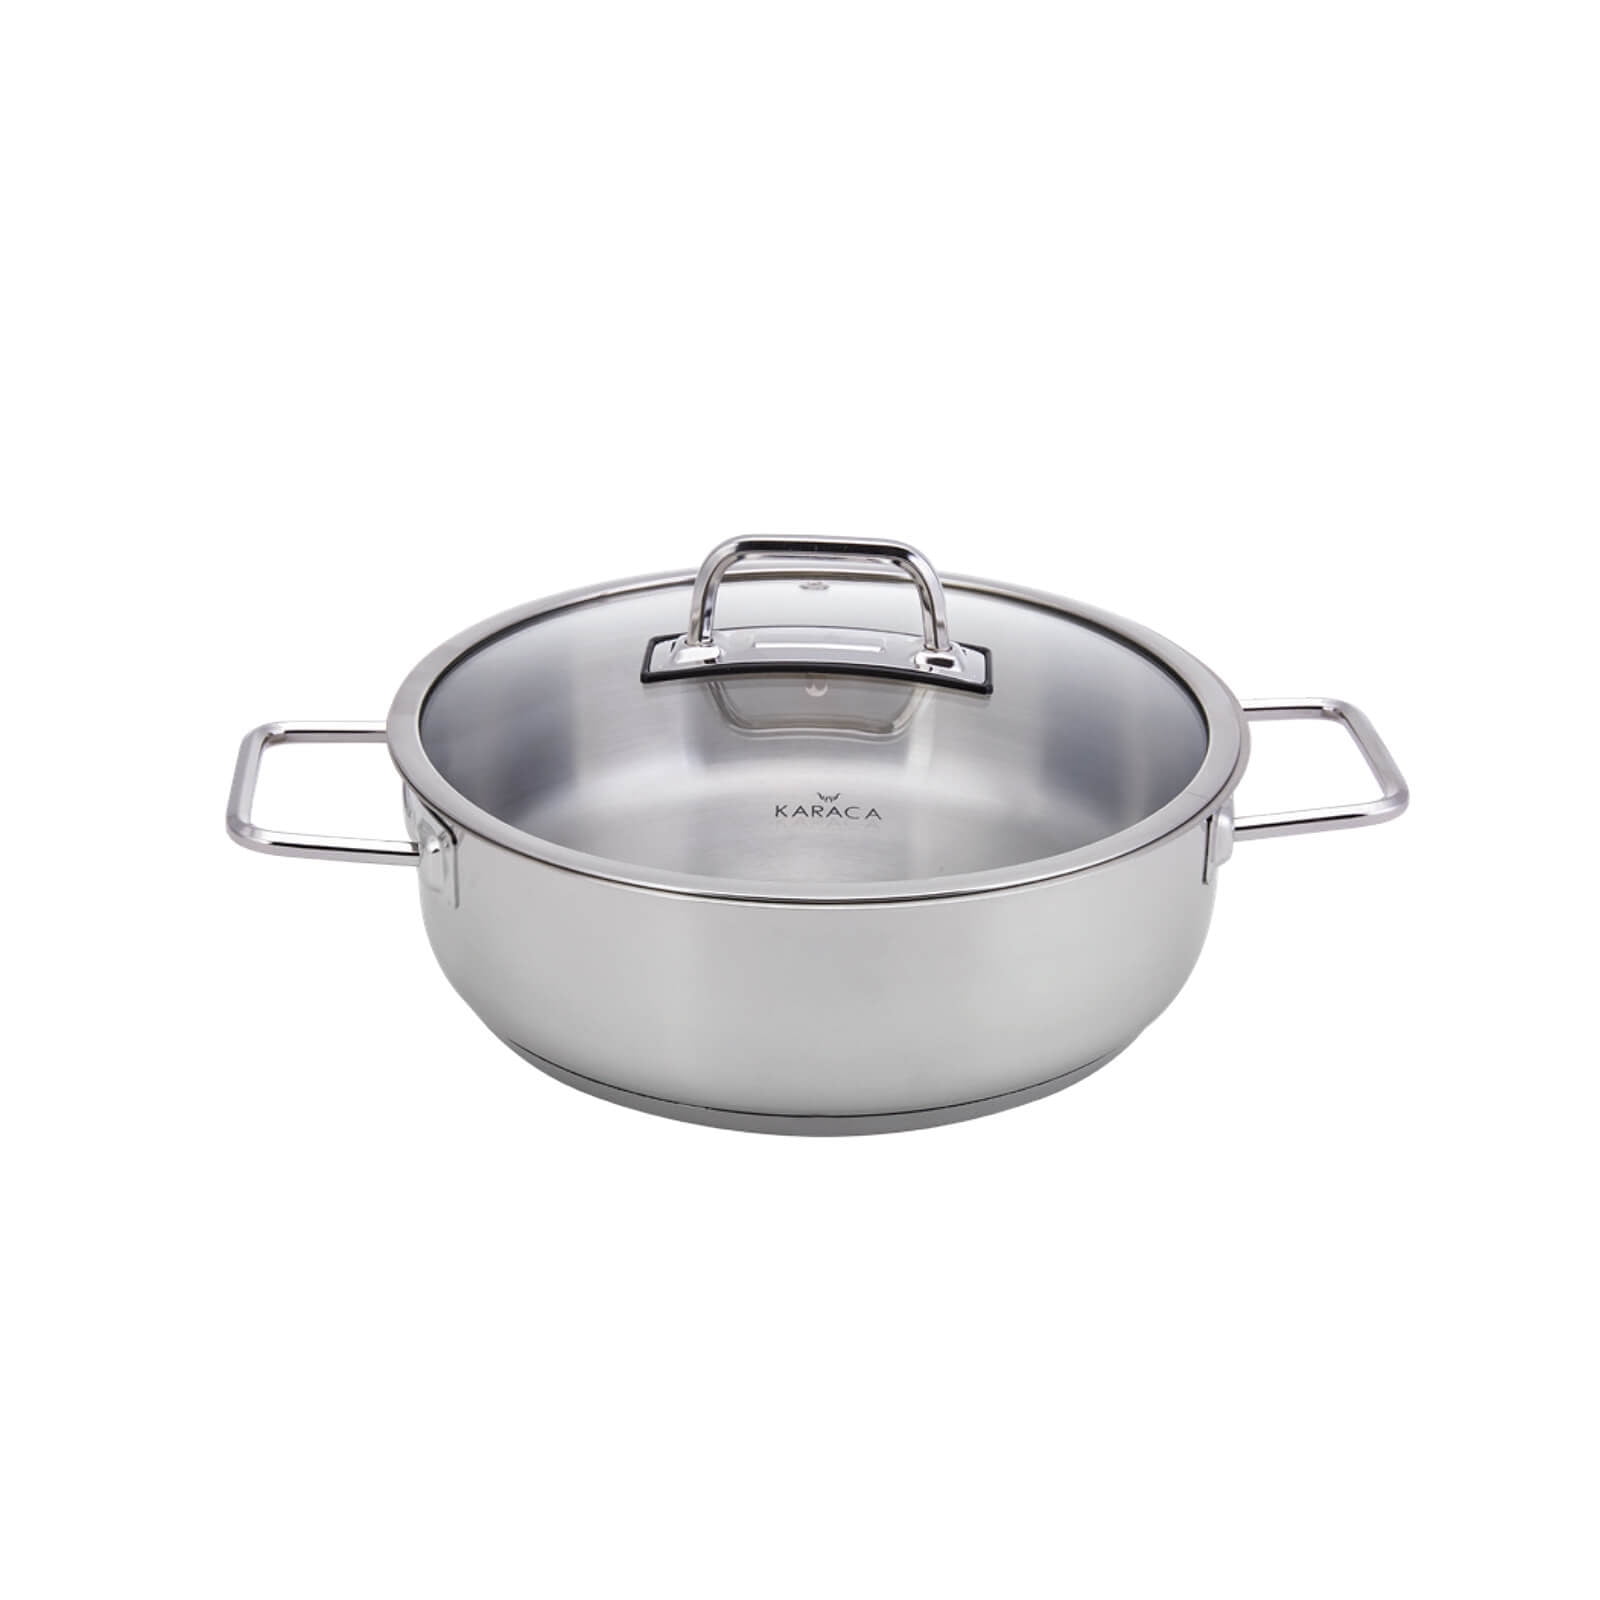 SET OF 9 Karaca Stainless Steel Cookware Pot(Stockpots,Casserole